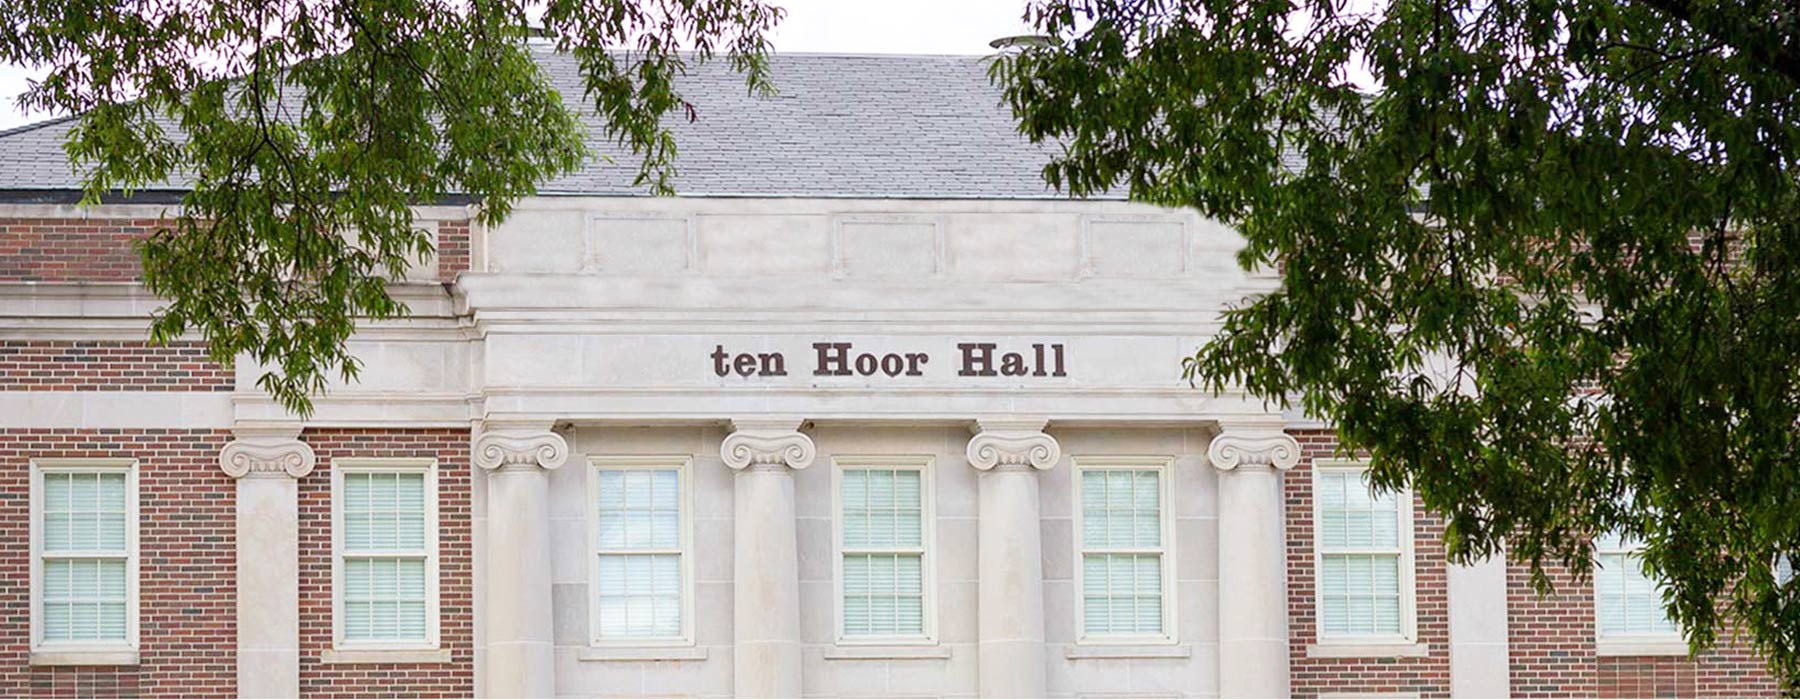 ten Hoor Hall, home of the UA Department of Philosophy